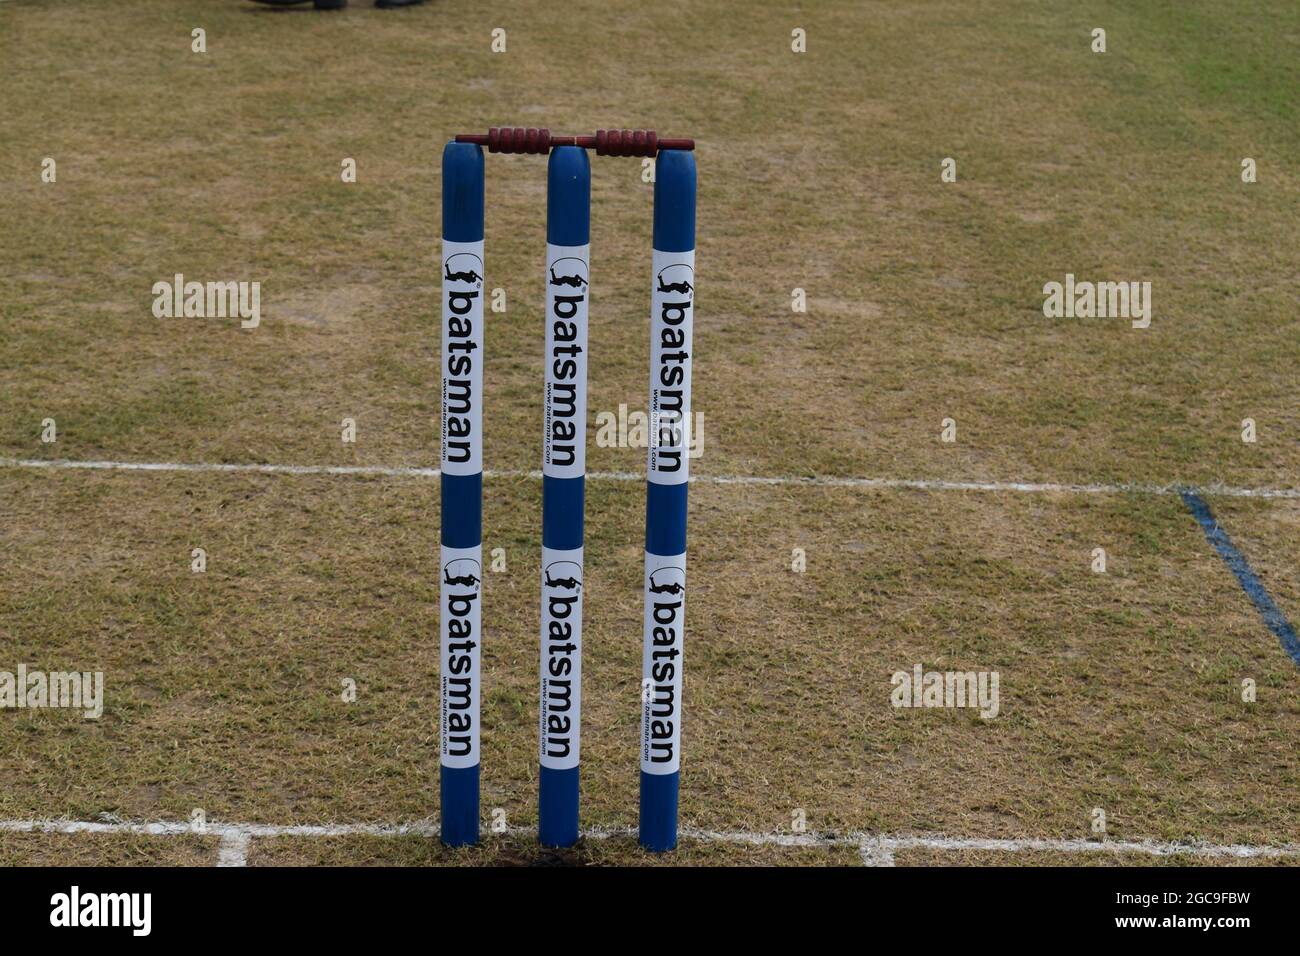 Des coups de poule prêts à jouer lors d'un match de cricket. Sri Lanka. Banque D'Images